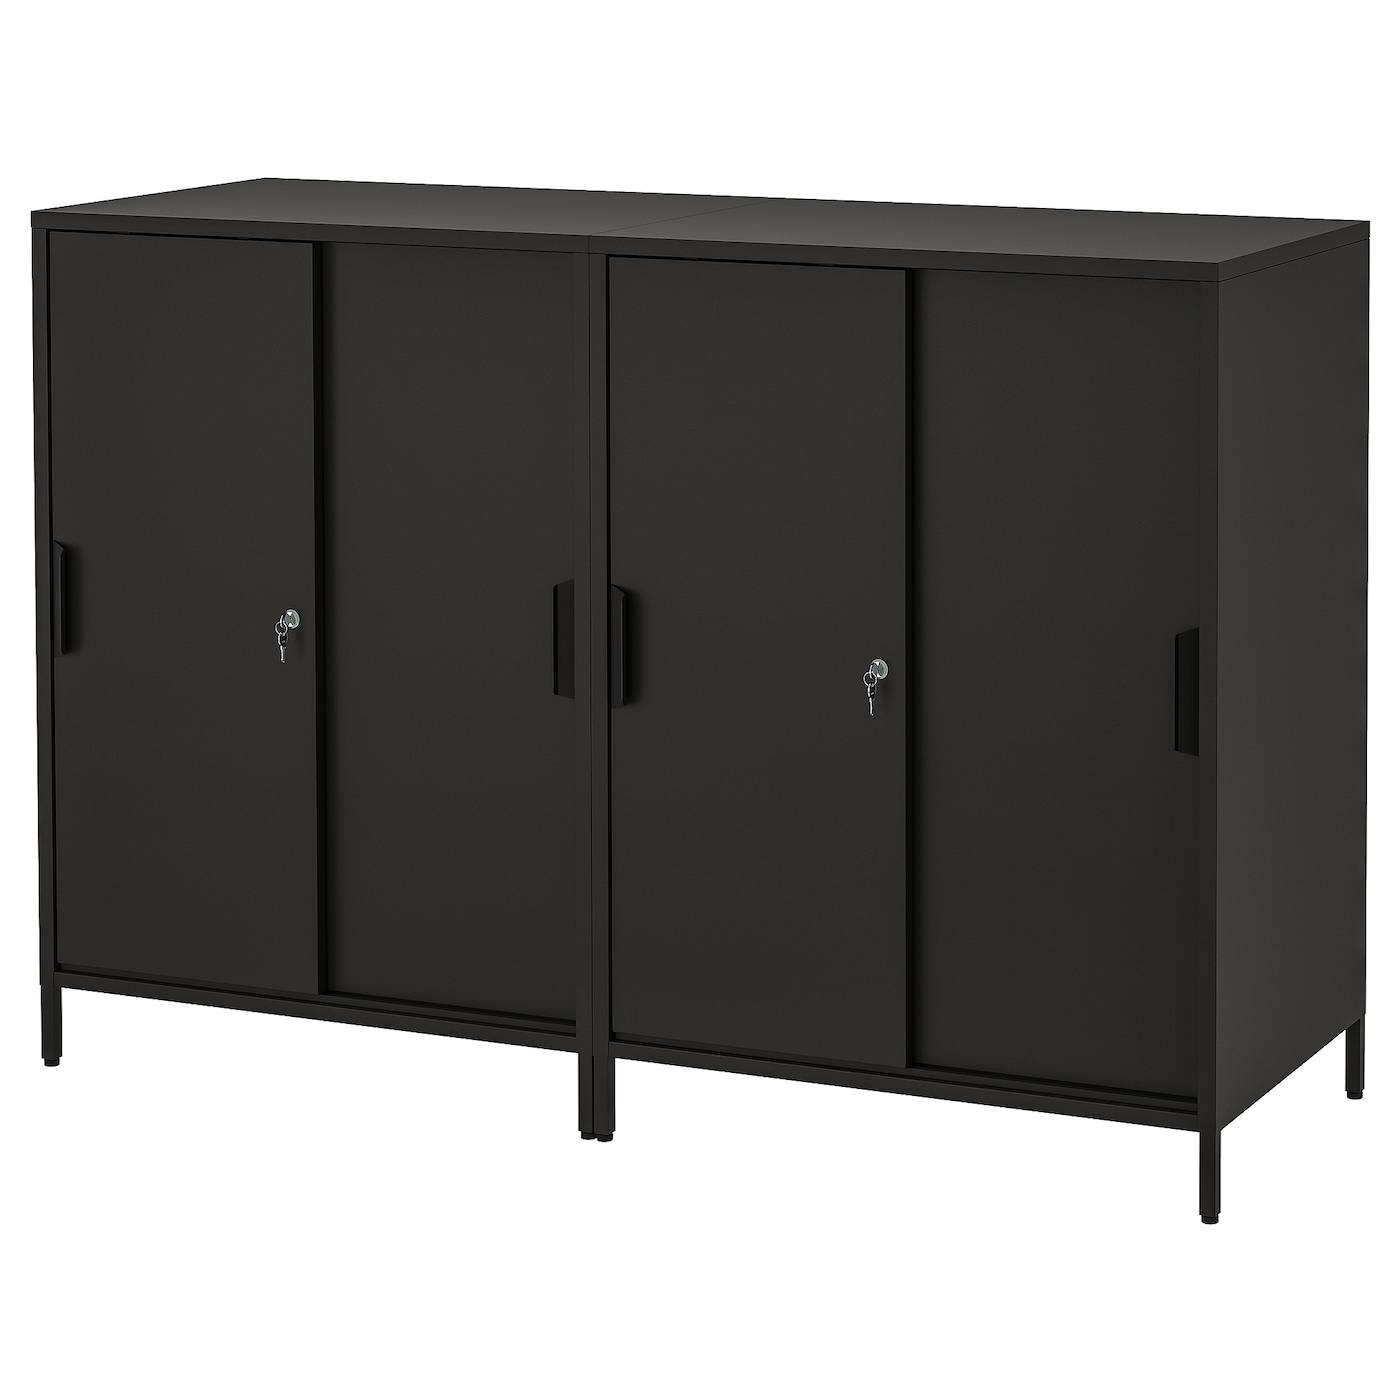 Шкаф - TROTTEN IKEA/ ТРОТТЕН ИКЕА,  160х110 см, черный